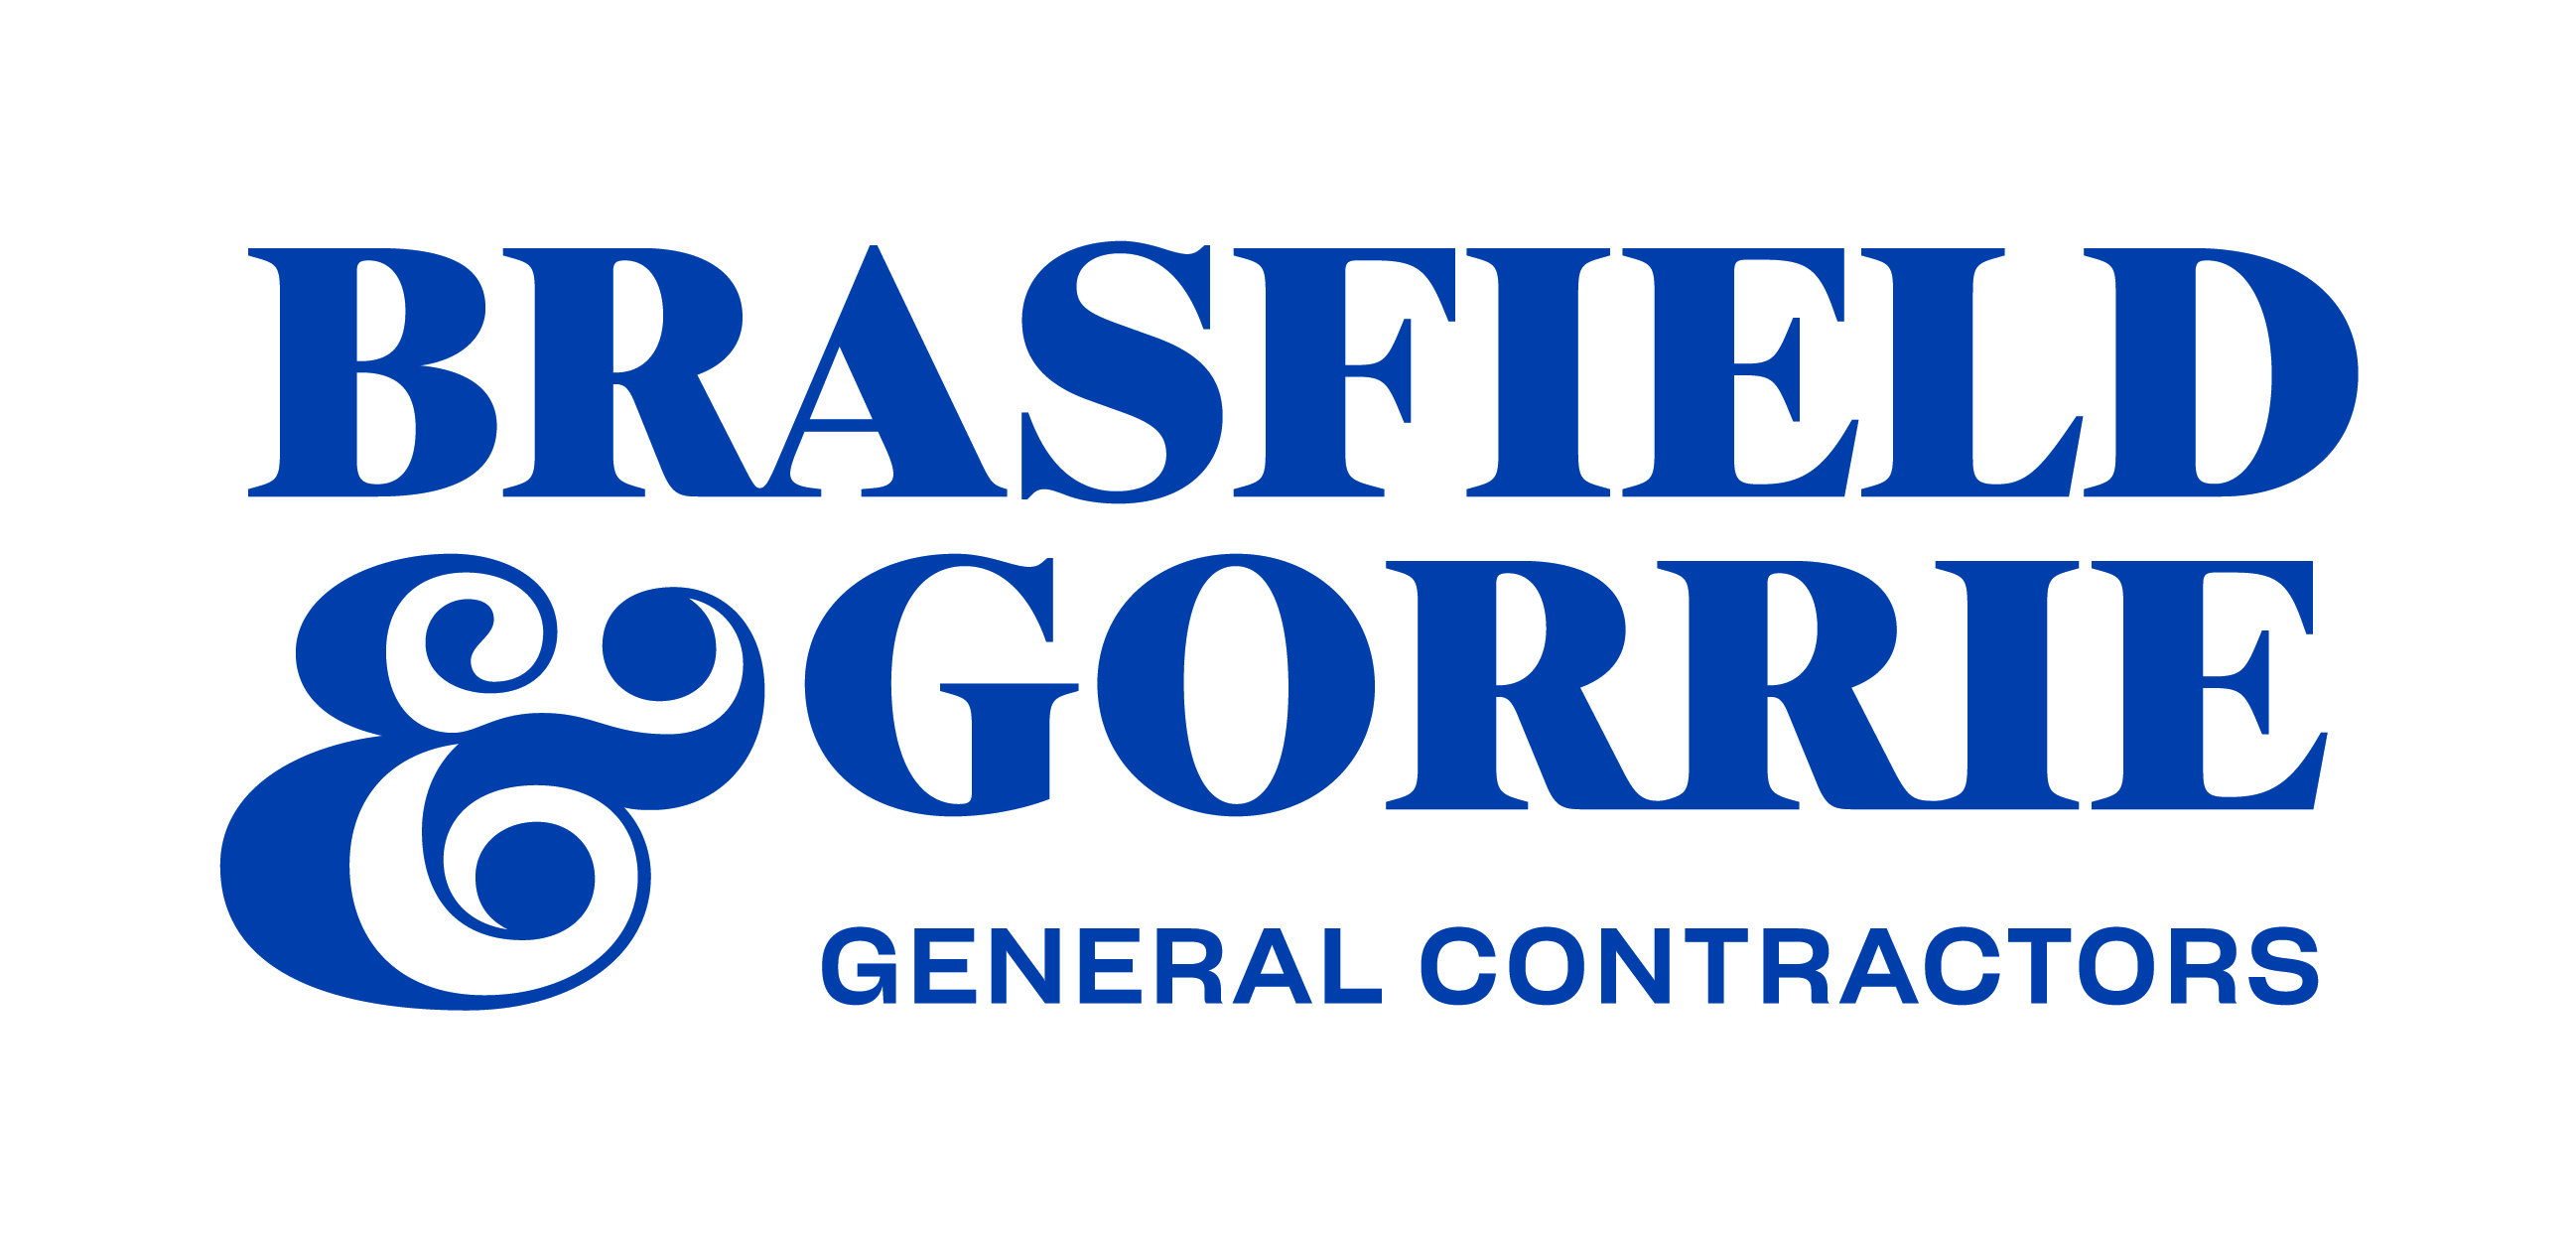 Brasfield & Gorrie General Contractors logo